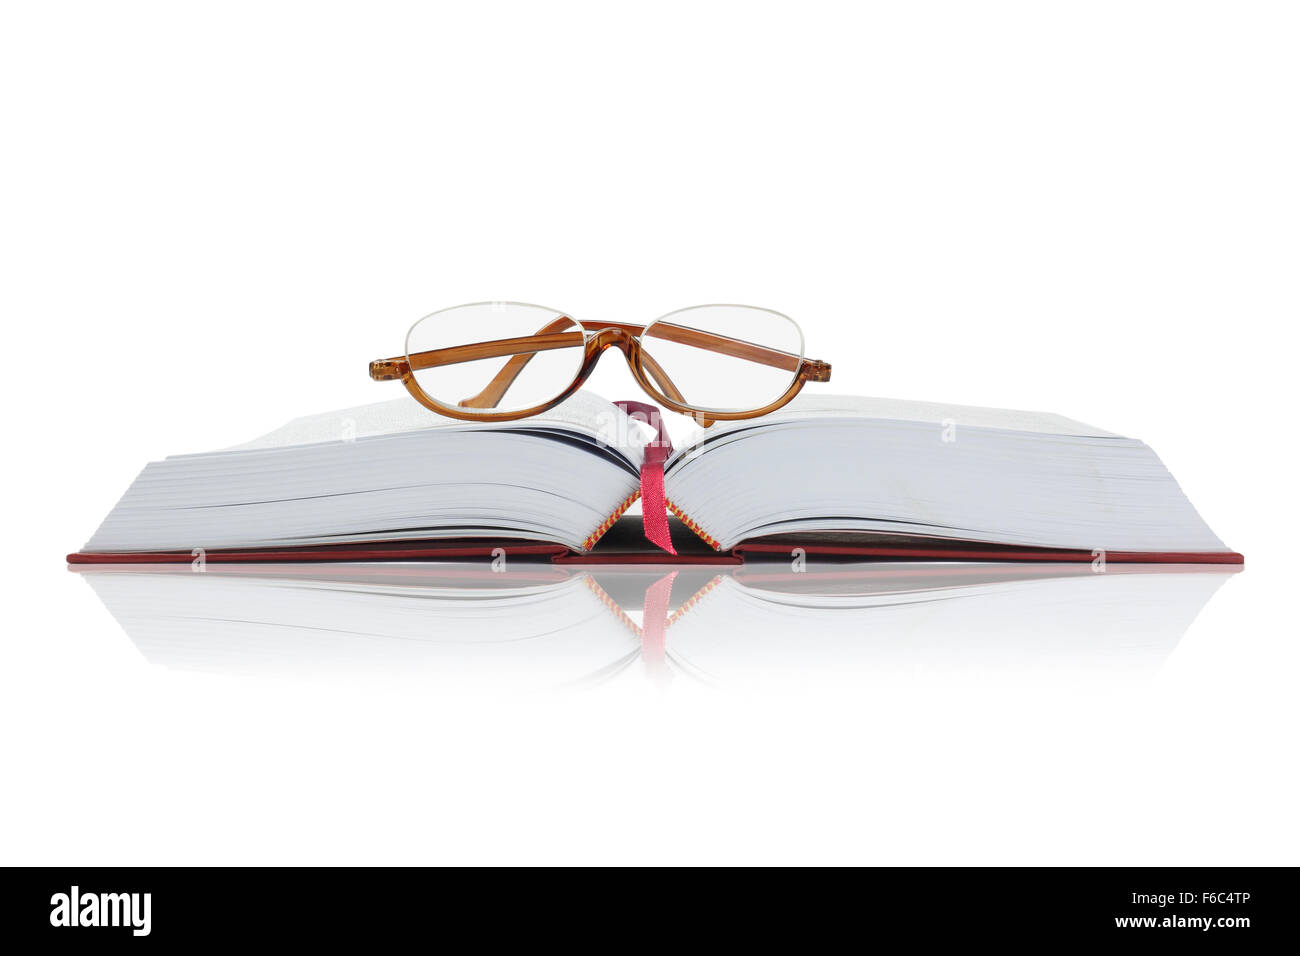 Gafas de lectura en abierto un libro de tapa dura con espacio de copia Foto de stock